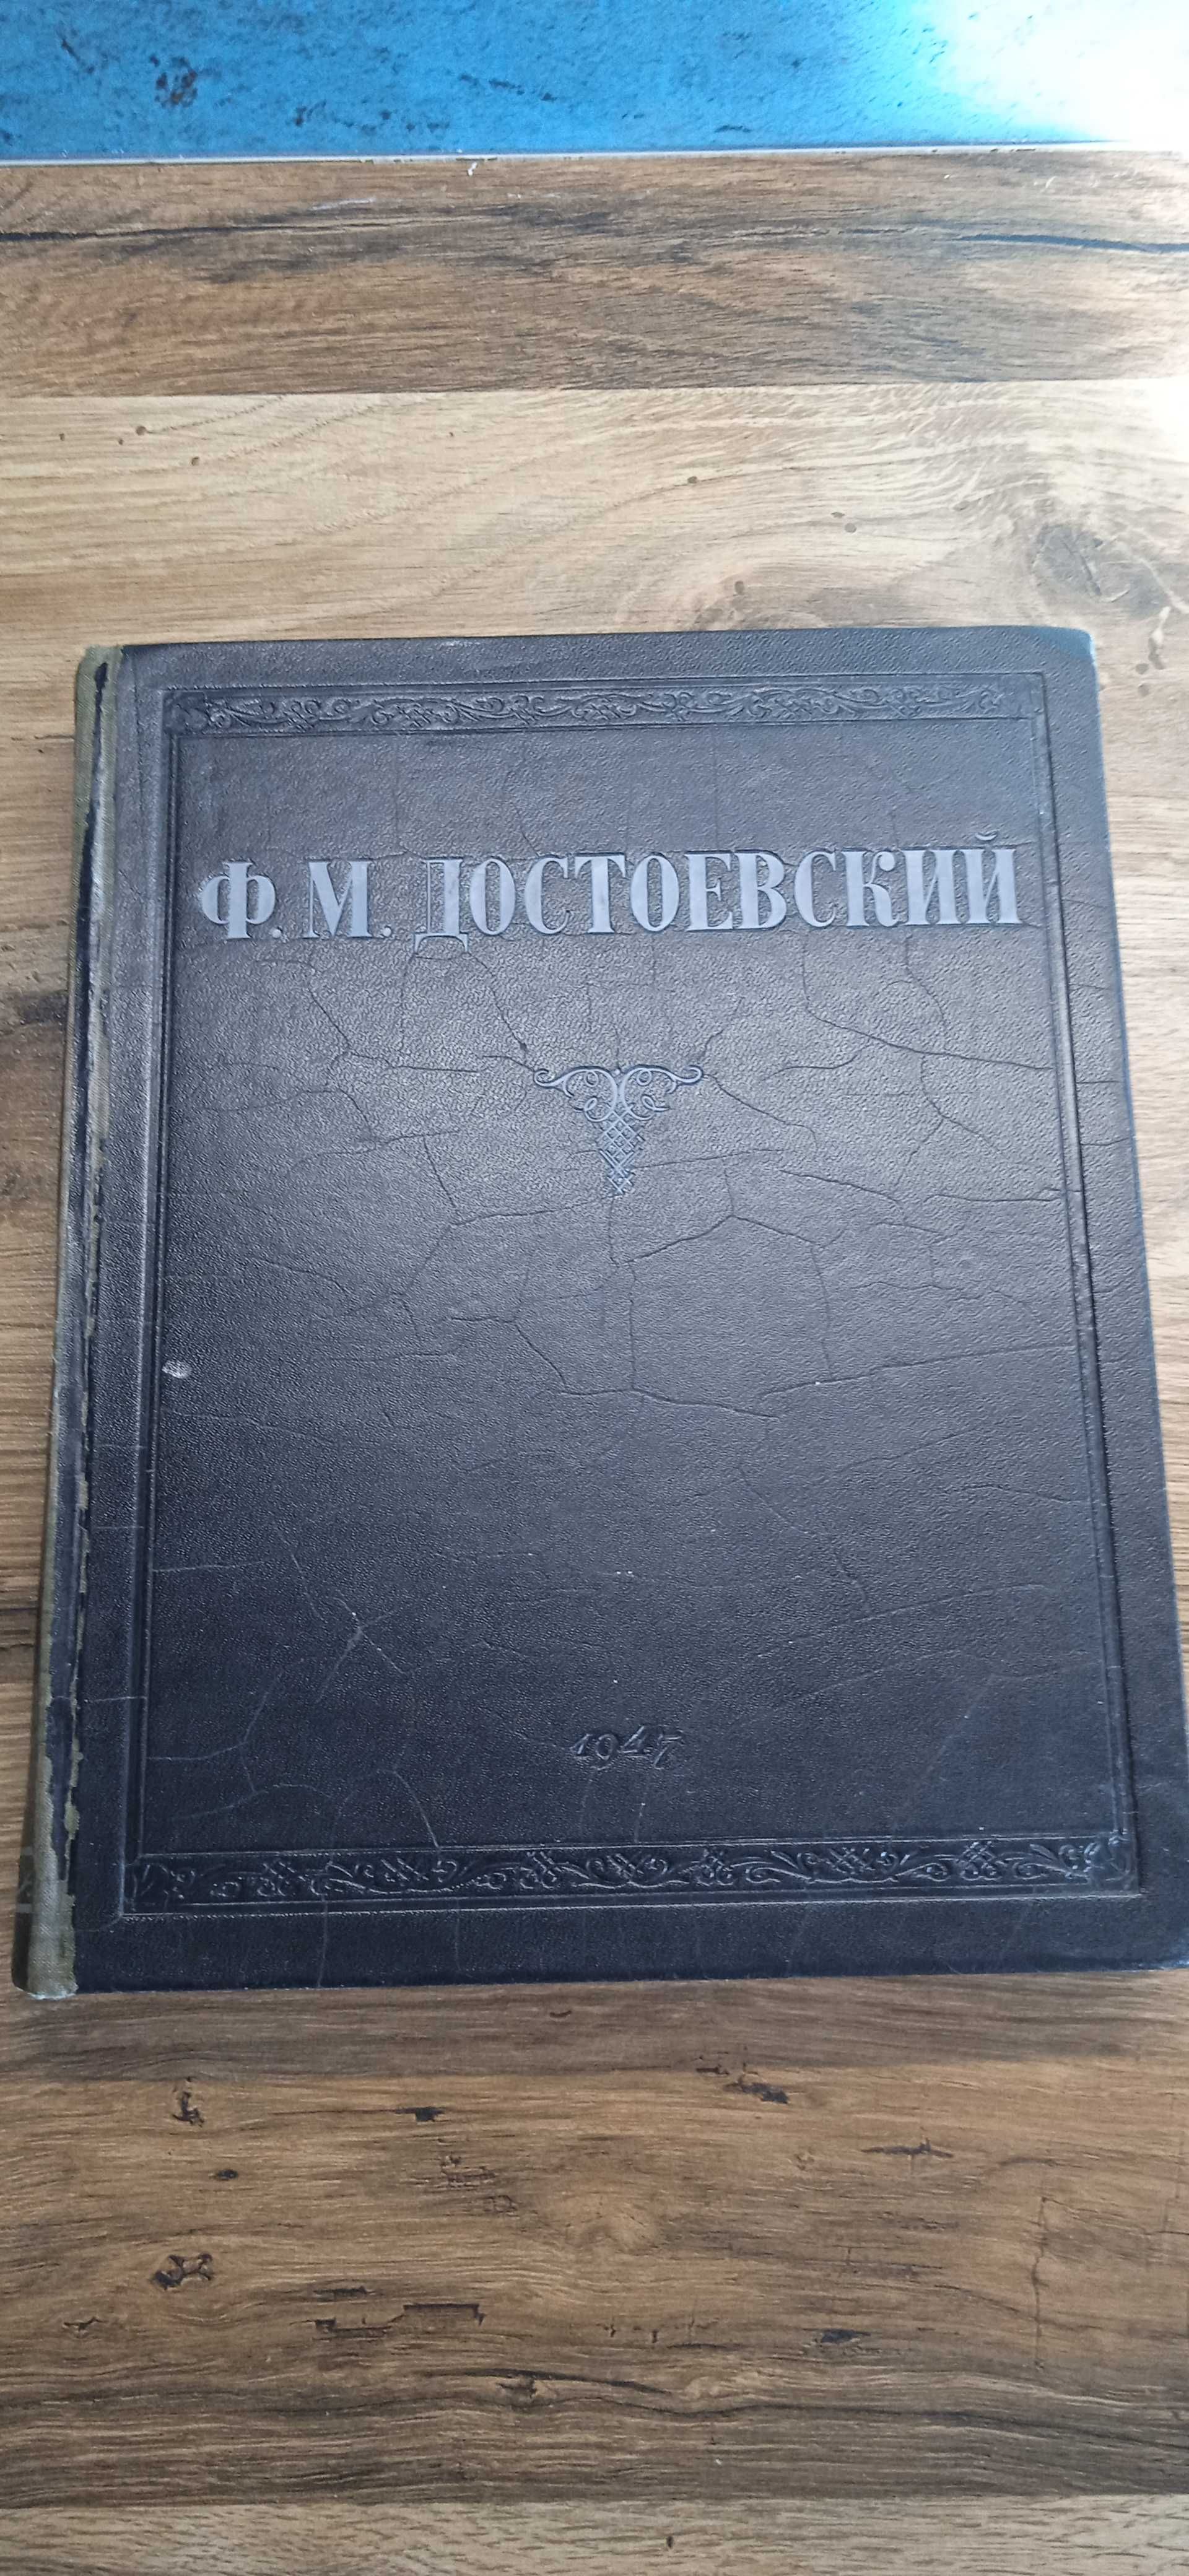 Достоевский. 1947 г. Преступление и наказание и проч.